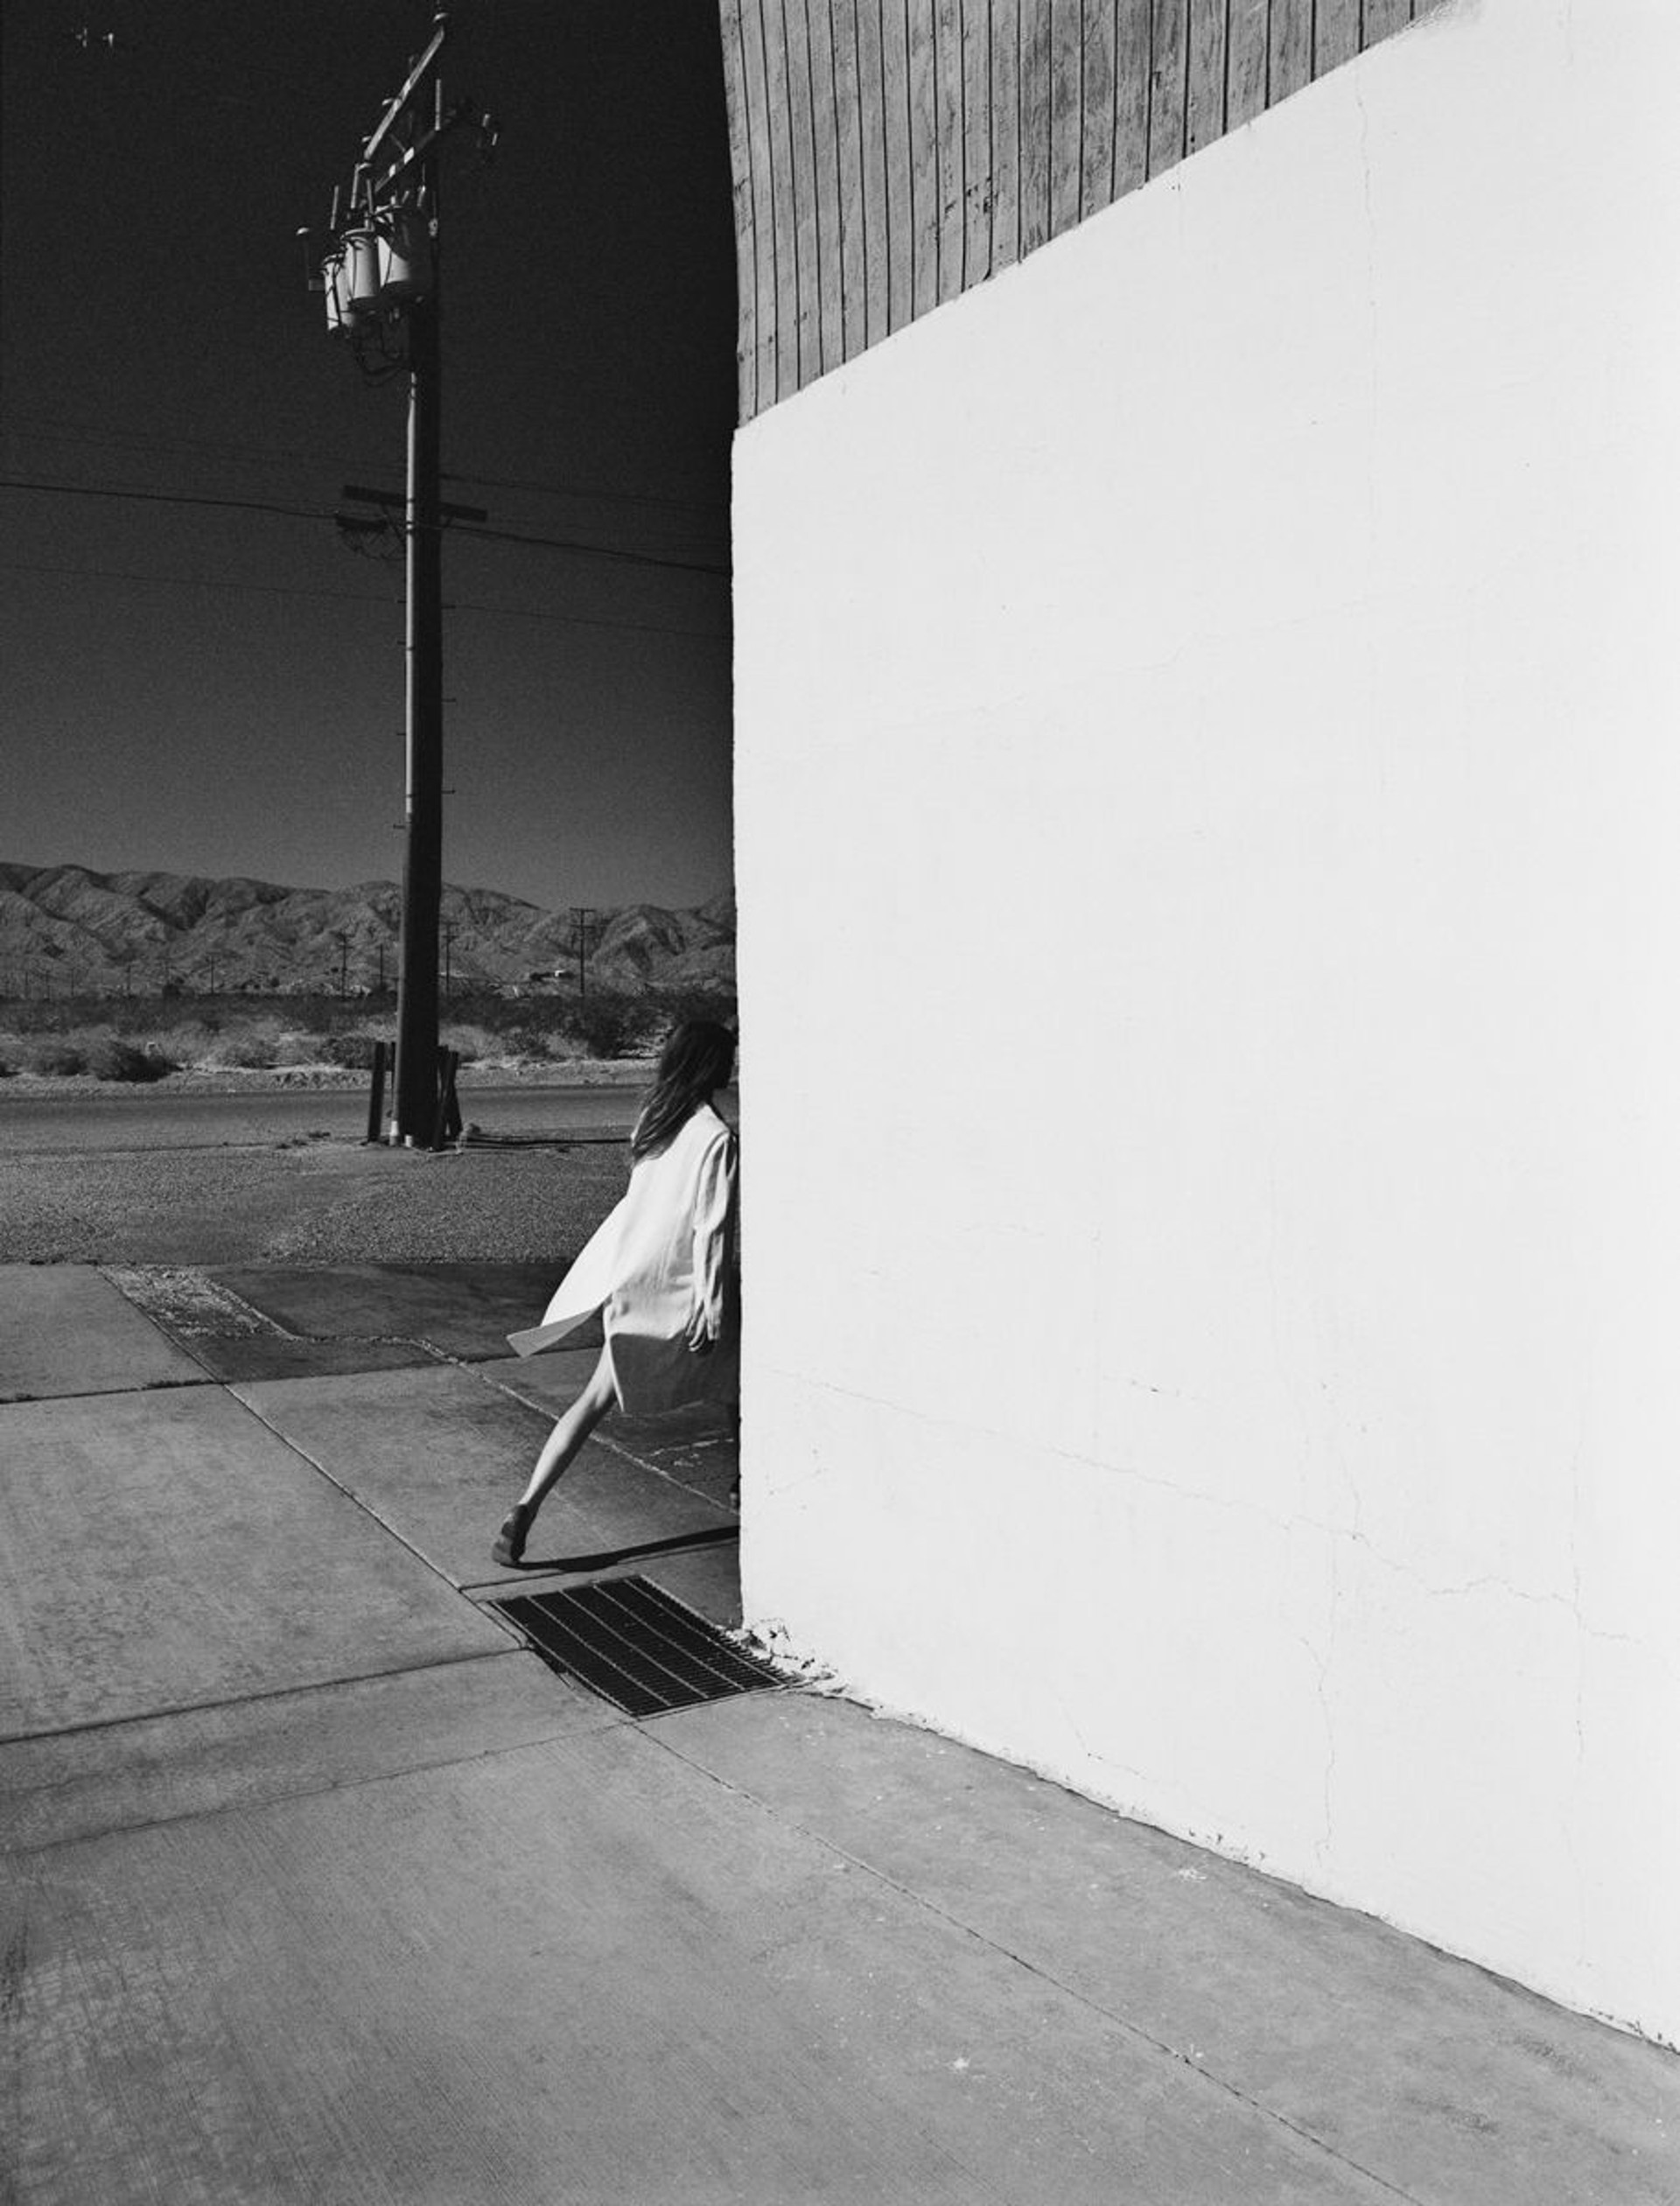 Mojave White Wall, Ed. A/P by Thom Jackson